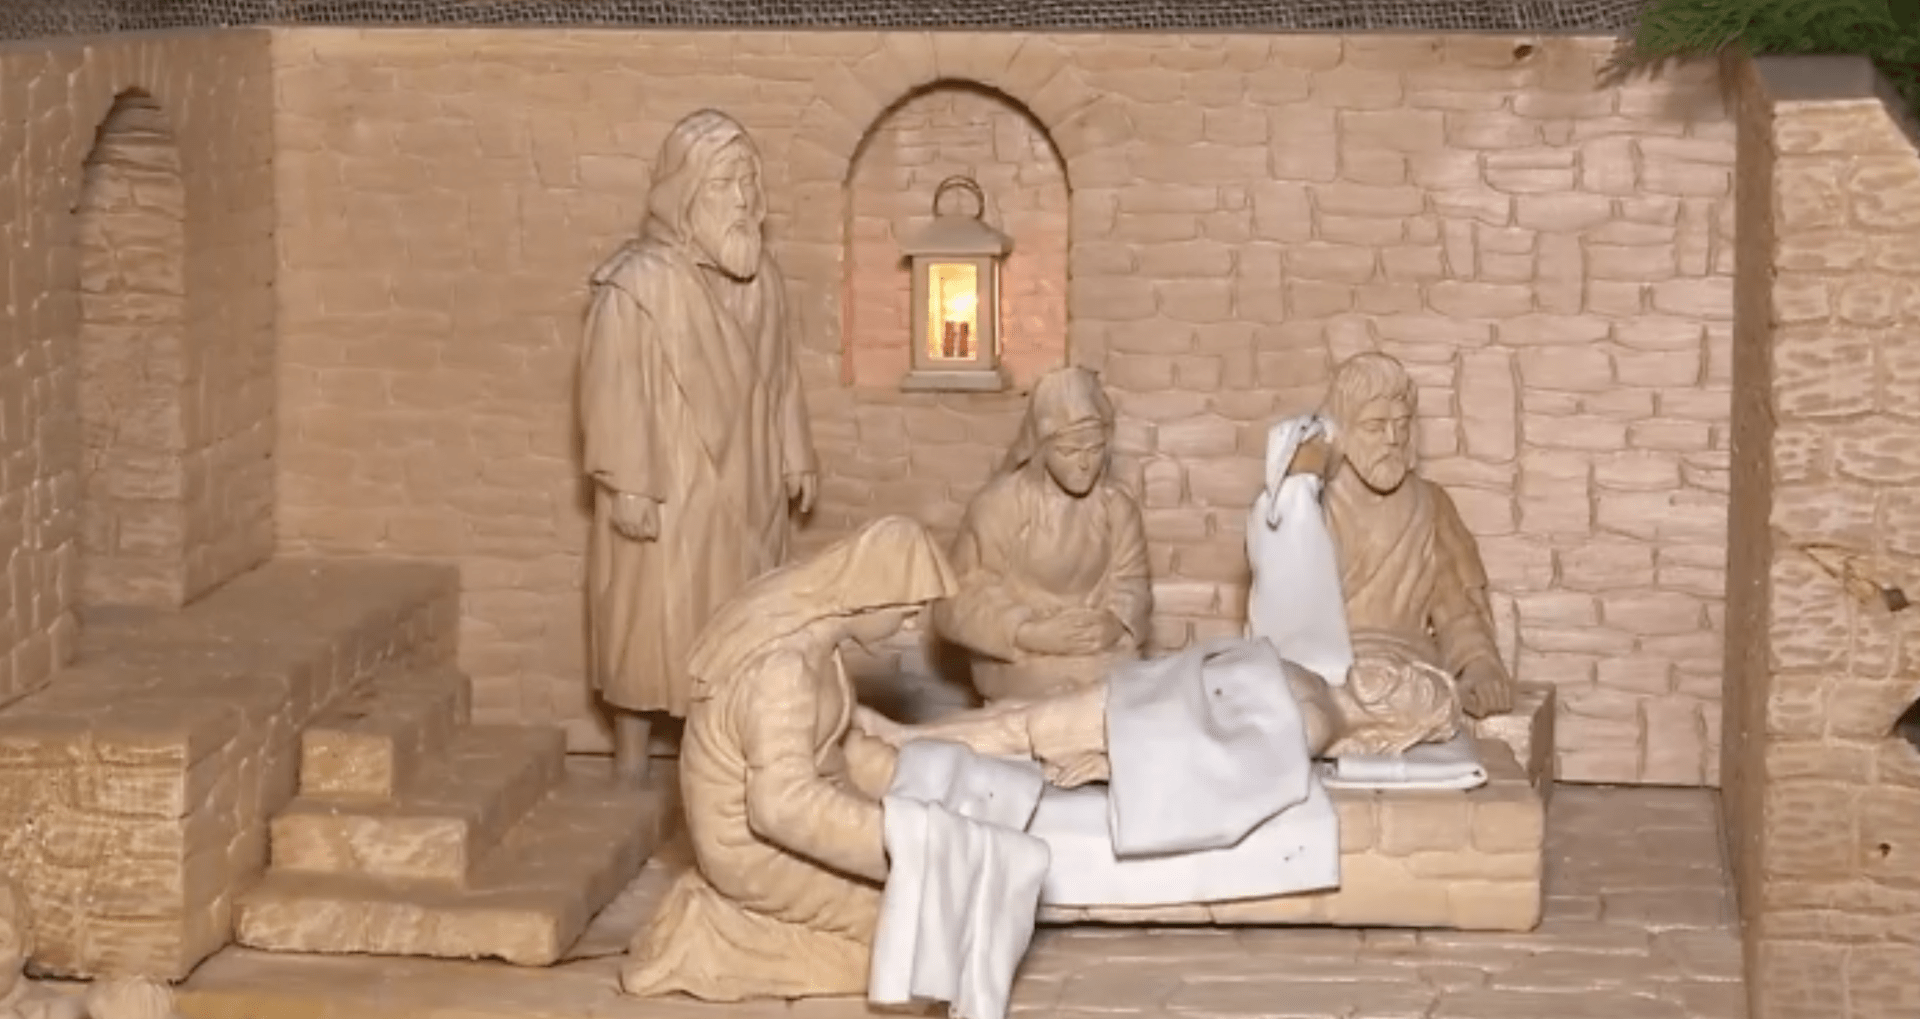 Pašijový betlém v Bechyni a ukládání Ježíše do hrobu